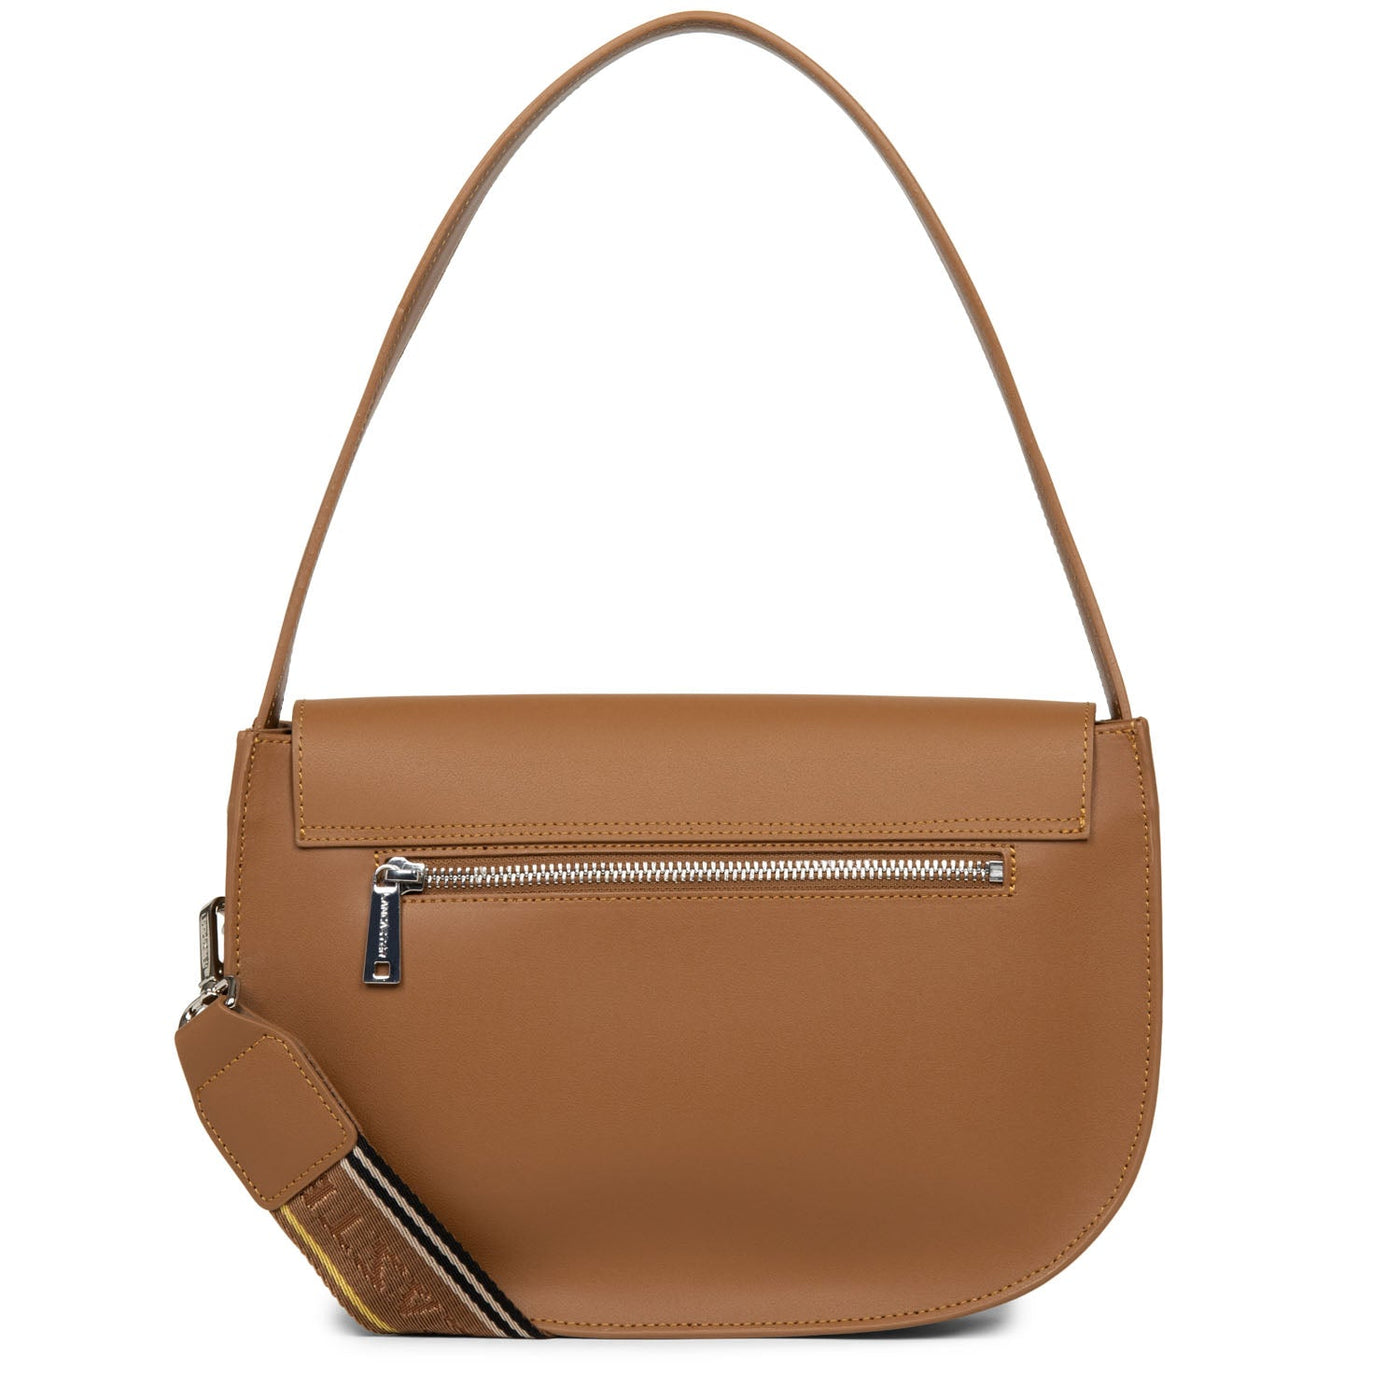 handbag - city lina #couleur_noisette